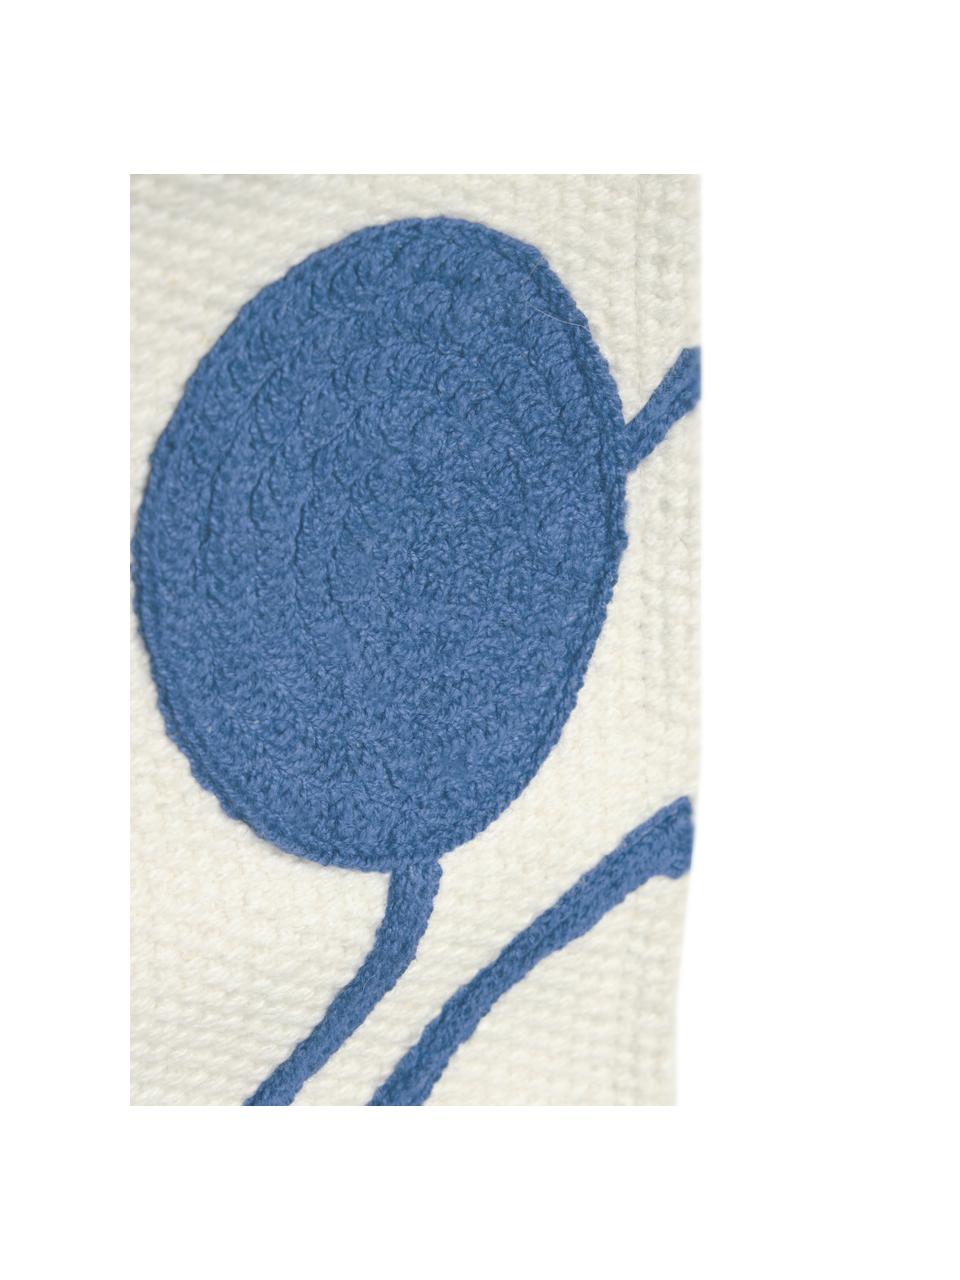 Dekoracja ścienna Atal, Kremowobiały, niebieski, S 28 x W 25 cm